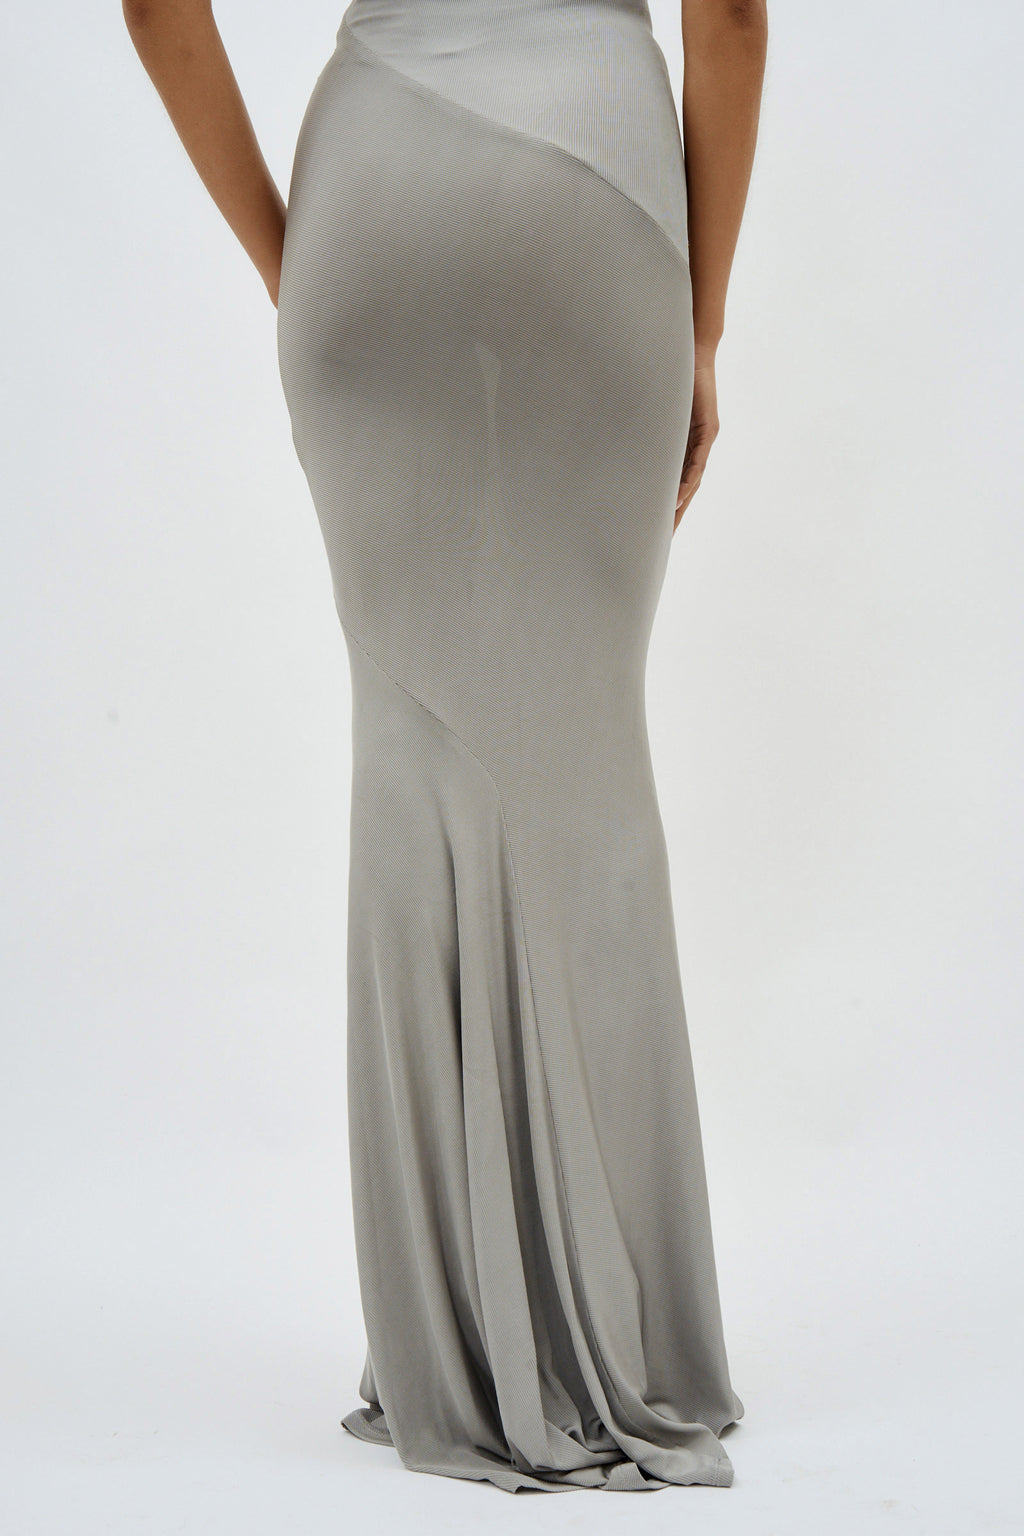 Sleeveless Bias Long Grey Dress